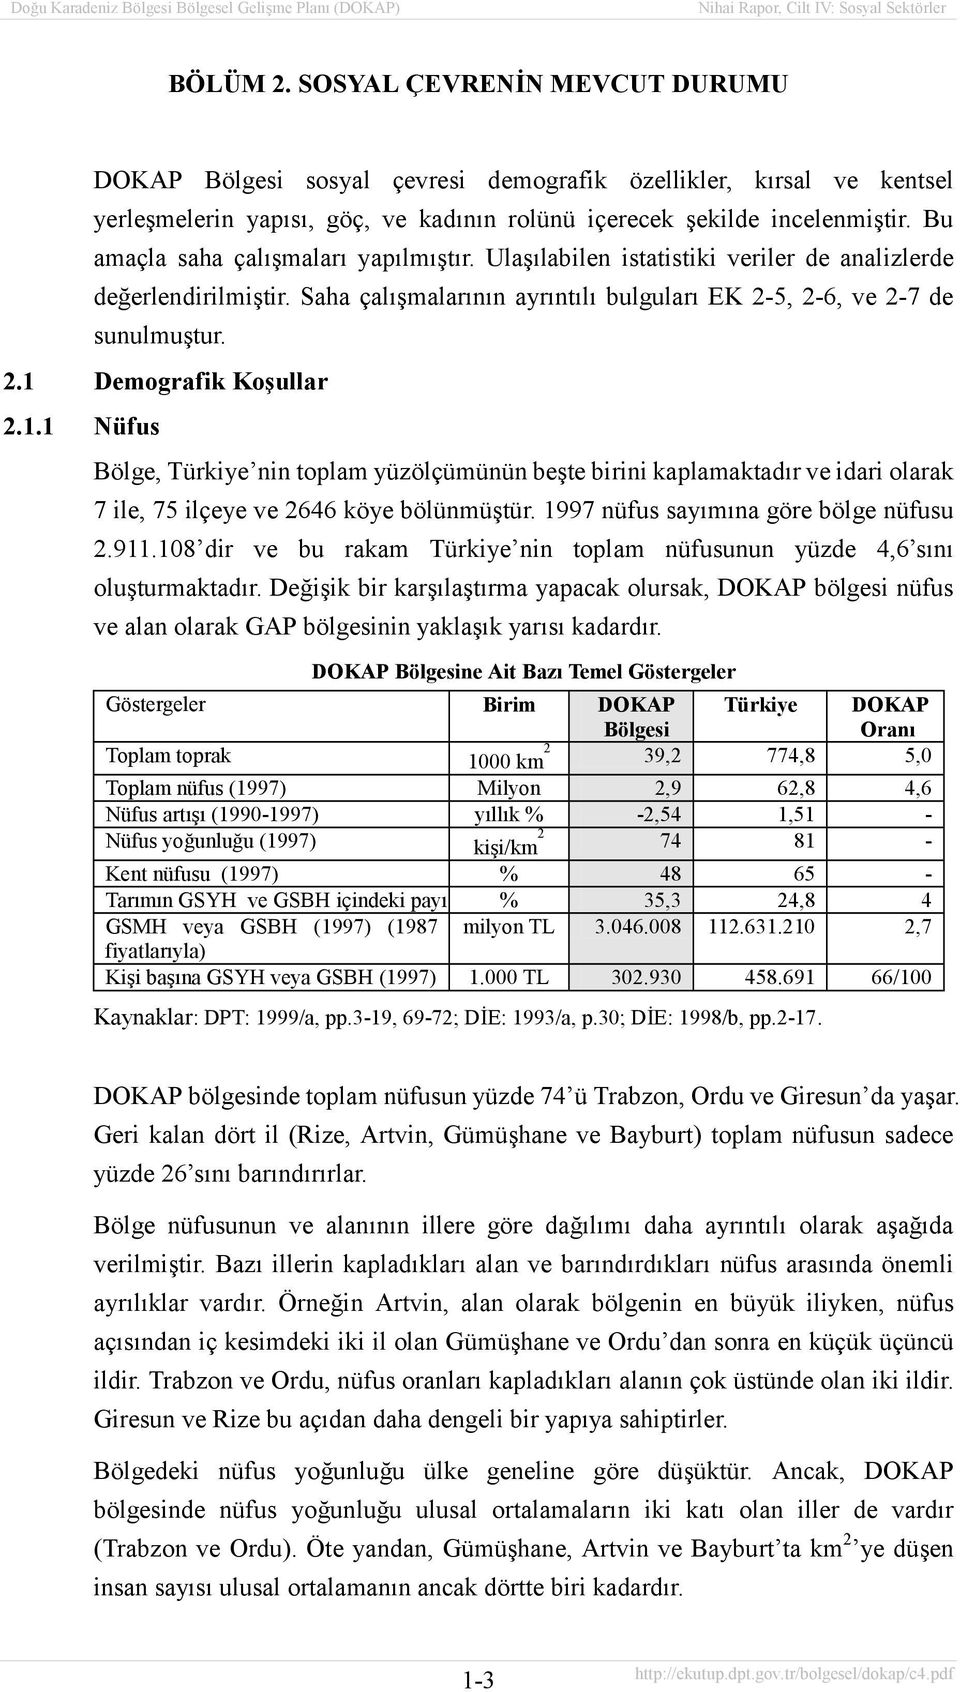 1.1 Nüfus Bölge, Türkiye nin toplam yüzölçümünün beşte birini kaplamaktadõr ve idari olarak 7 ile, 75 ilçeye ve 2646 köye bölünmüştür. 1997 nüfus sayõmõna göre bölge nüfusu 2.911.